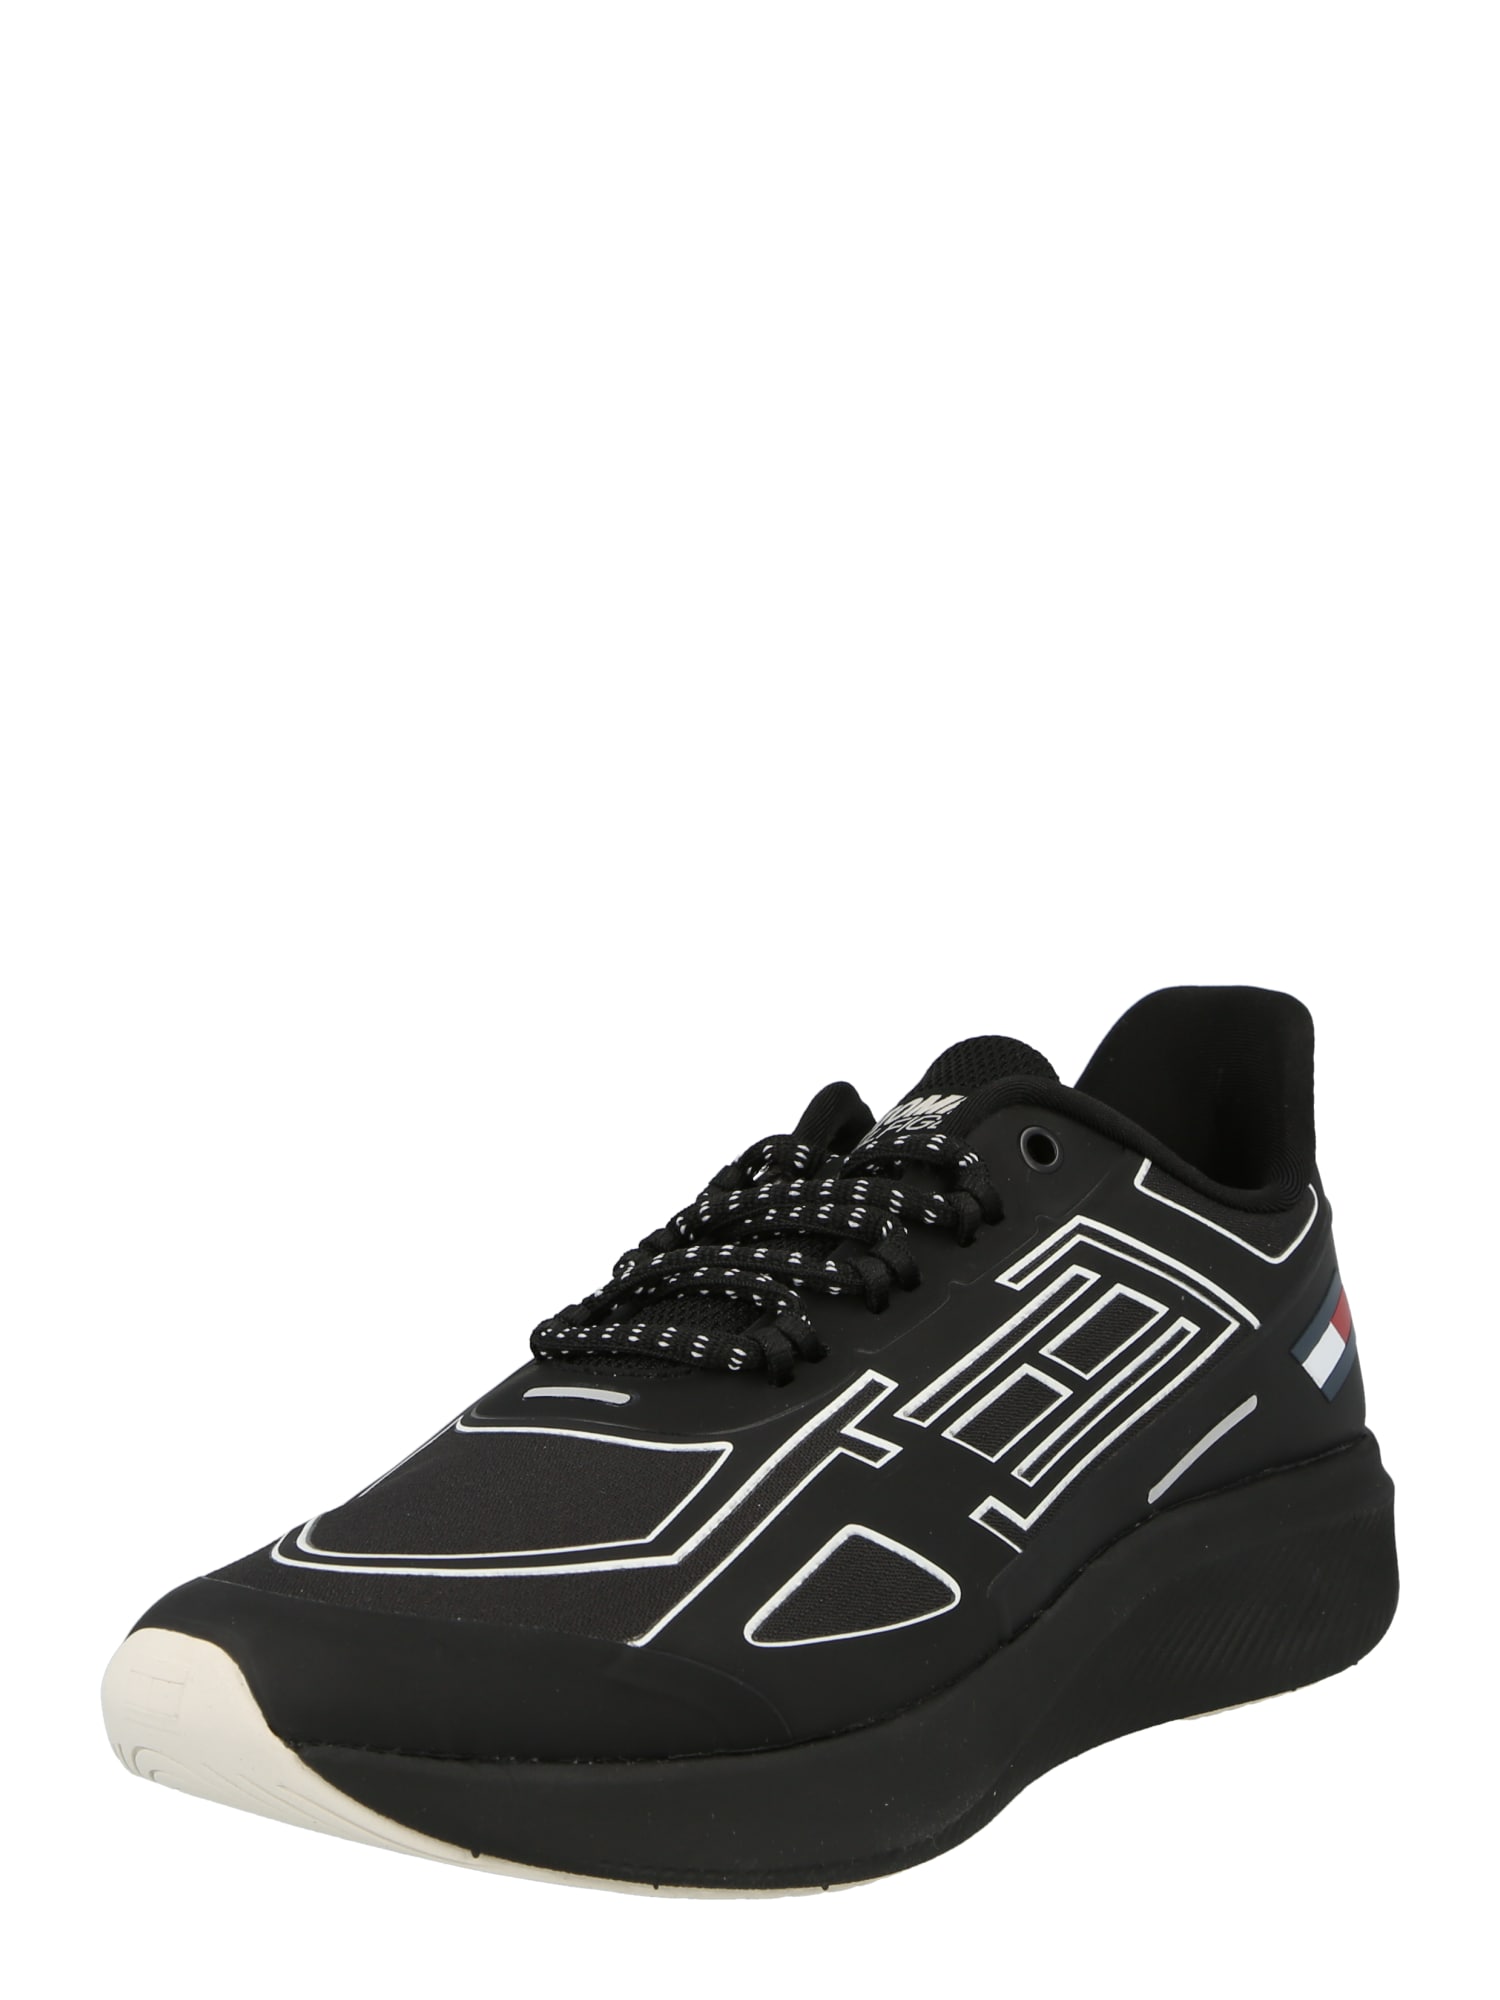 Tommy Sport Bėgimo batai juoda / balta / tamsiai mėlyna / raudona